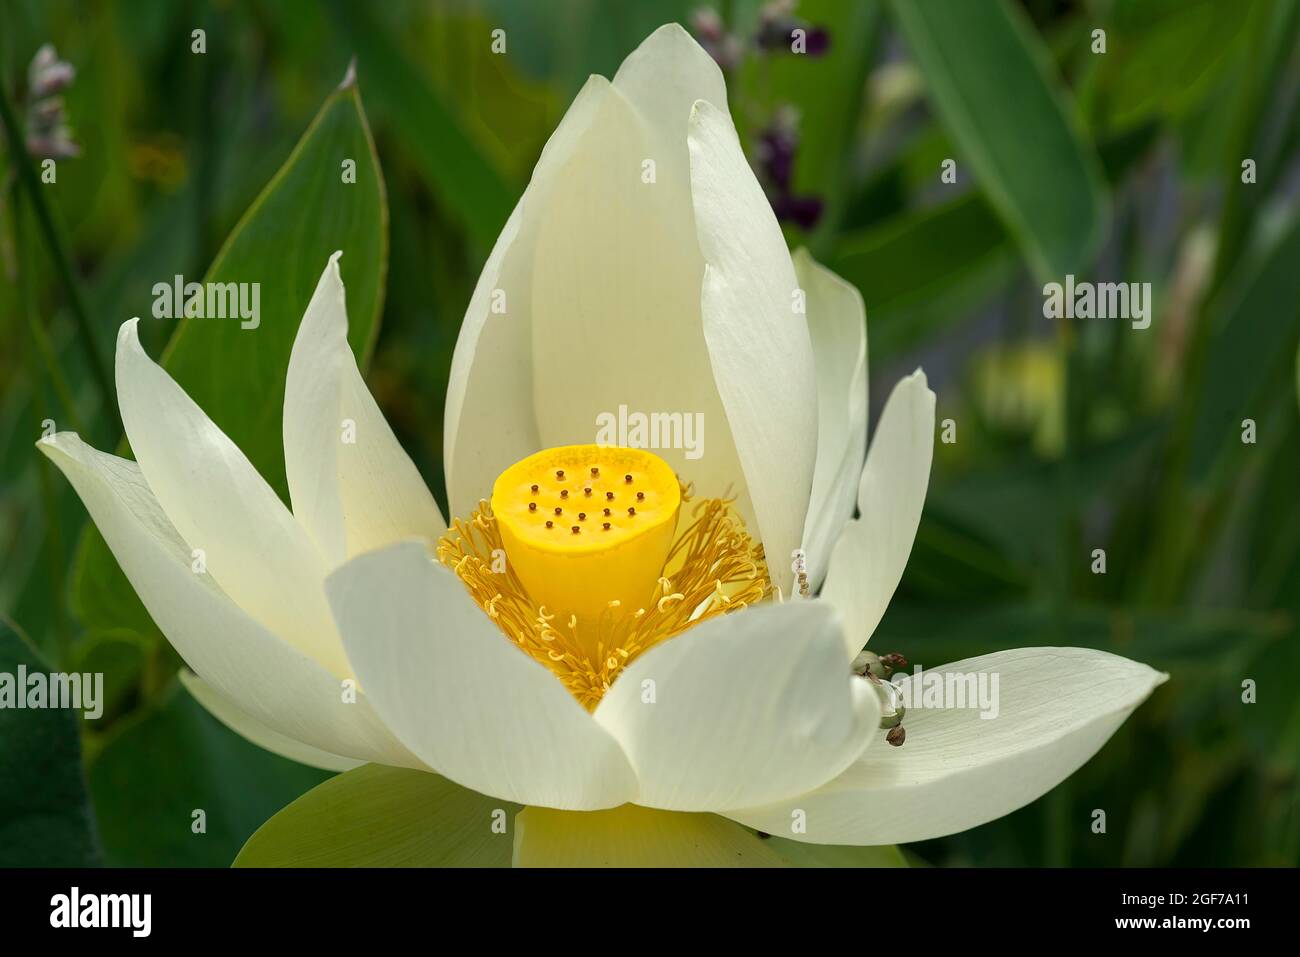 Blossom of a lotus (Nelumbo) flower, Botanical Garden, Erlangen, Bavaria, Germany Stock Photo